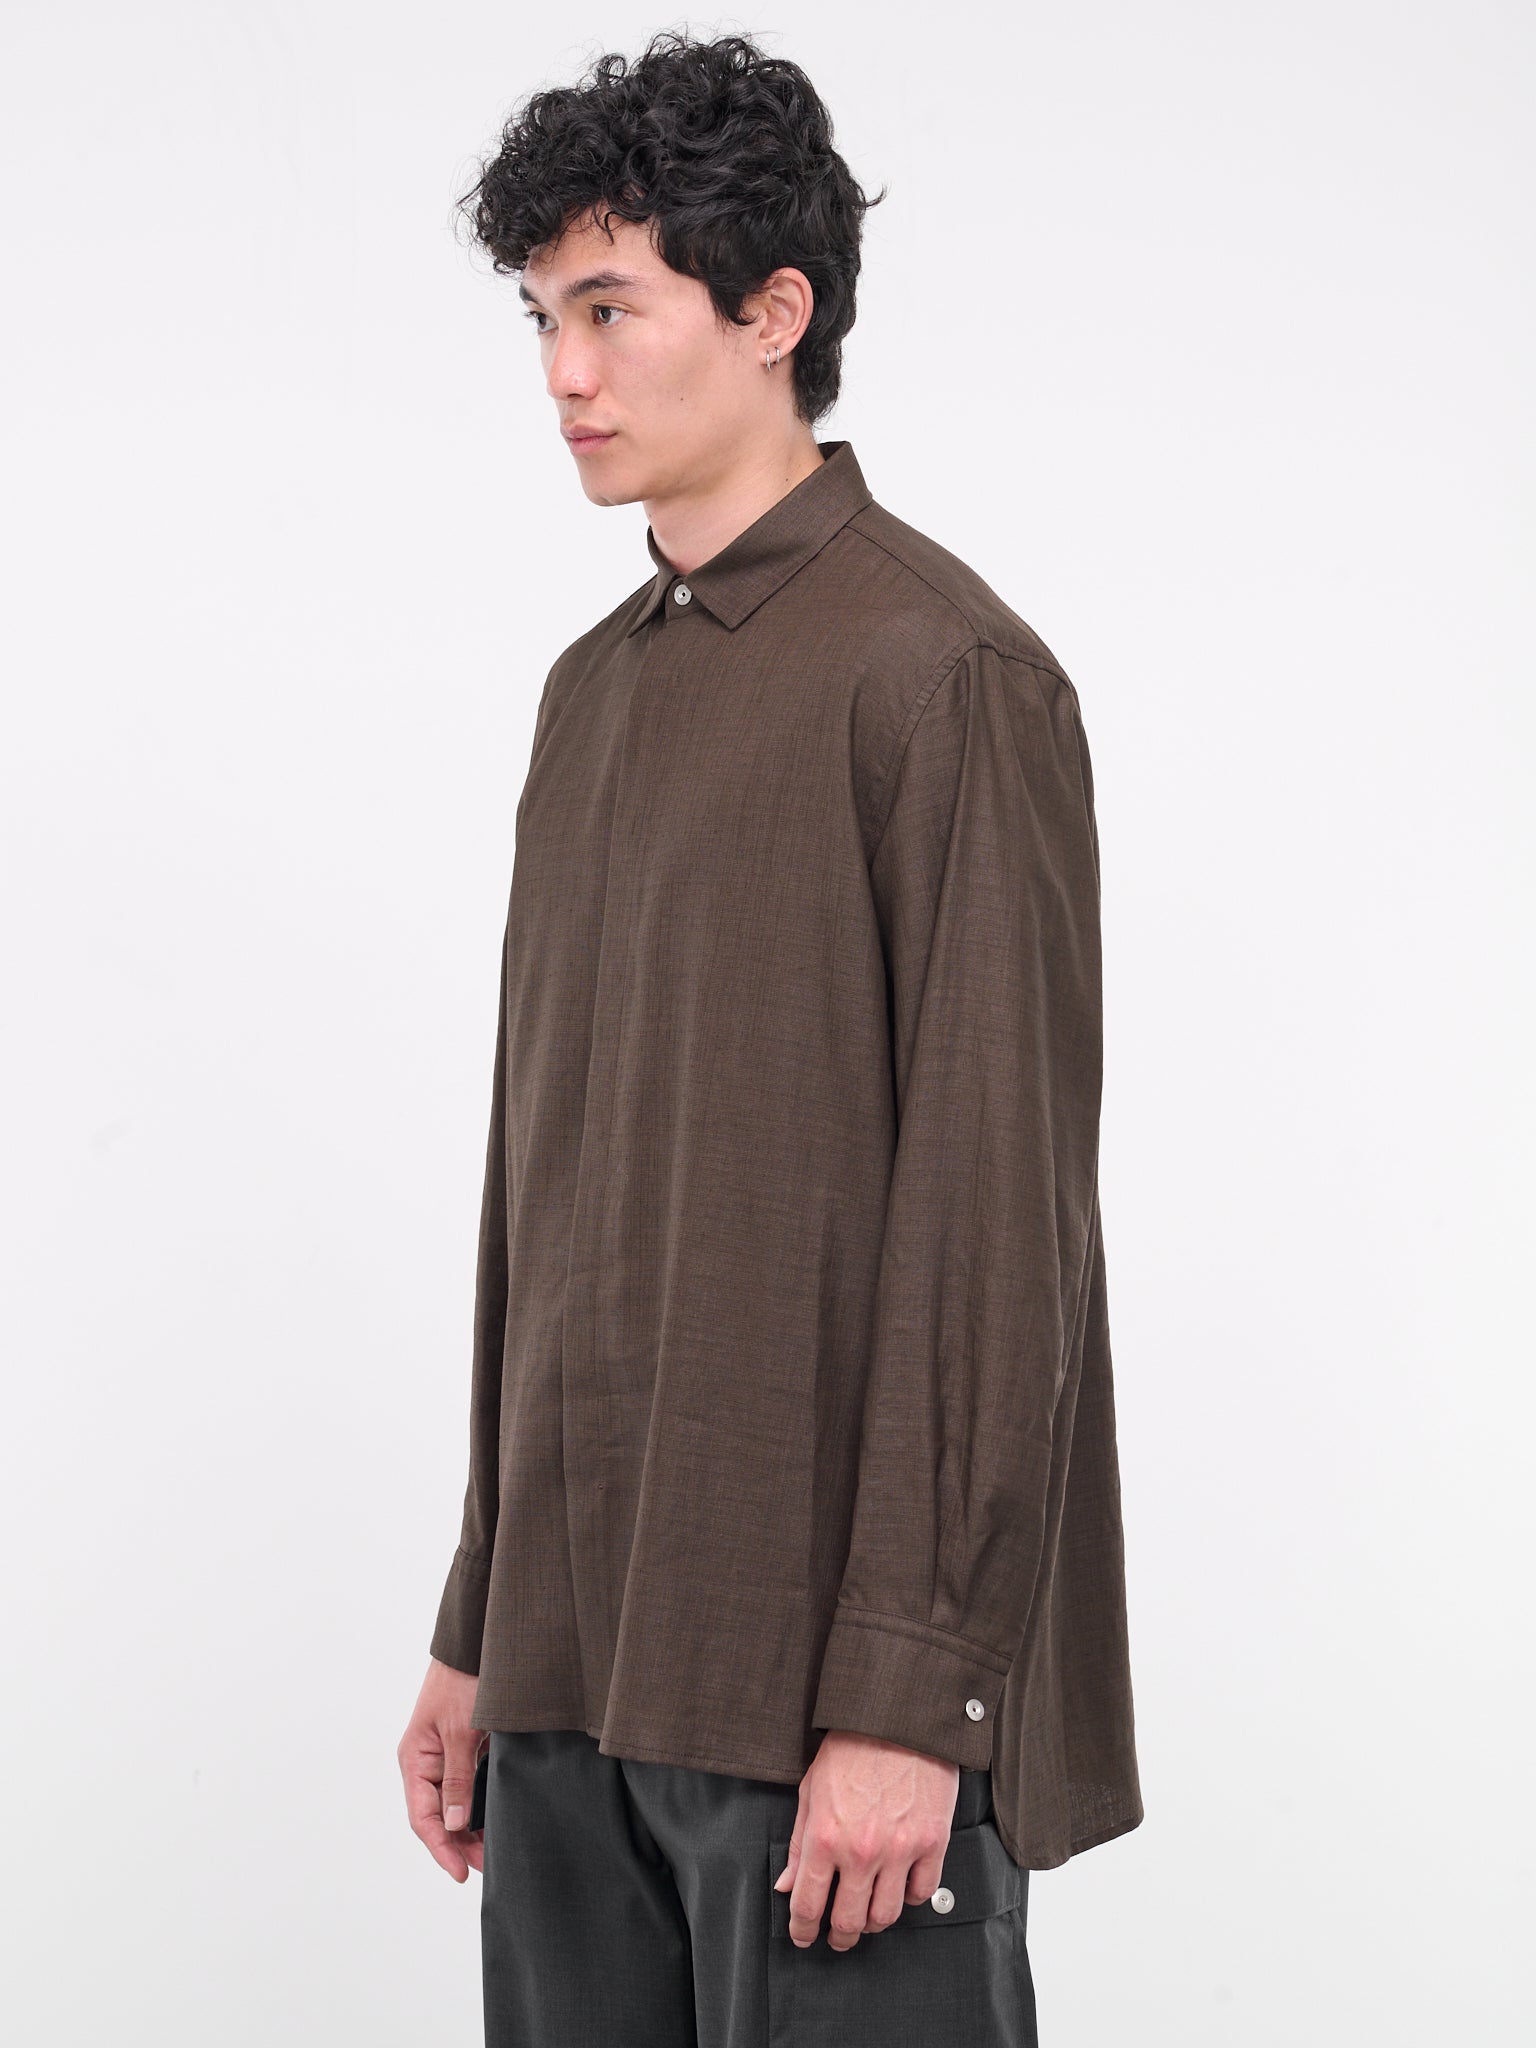 A Shirt (SHR-102-01-BROWN)